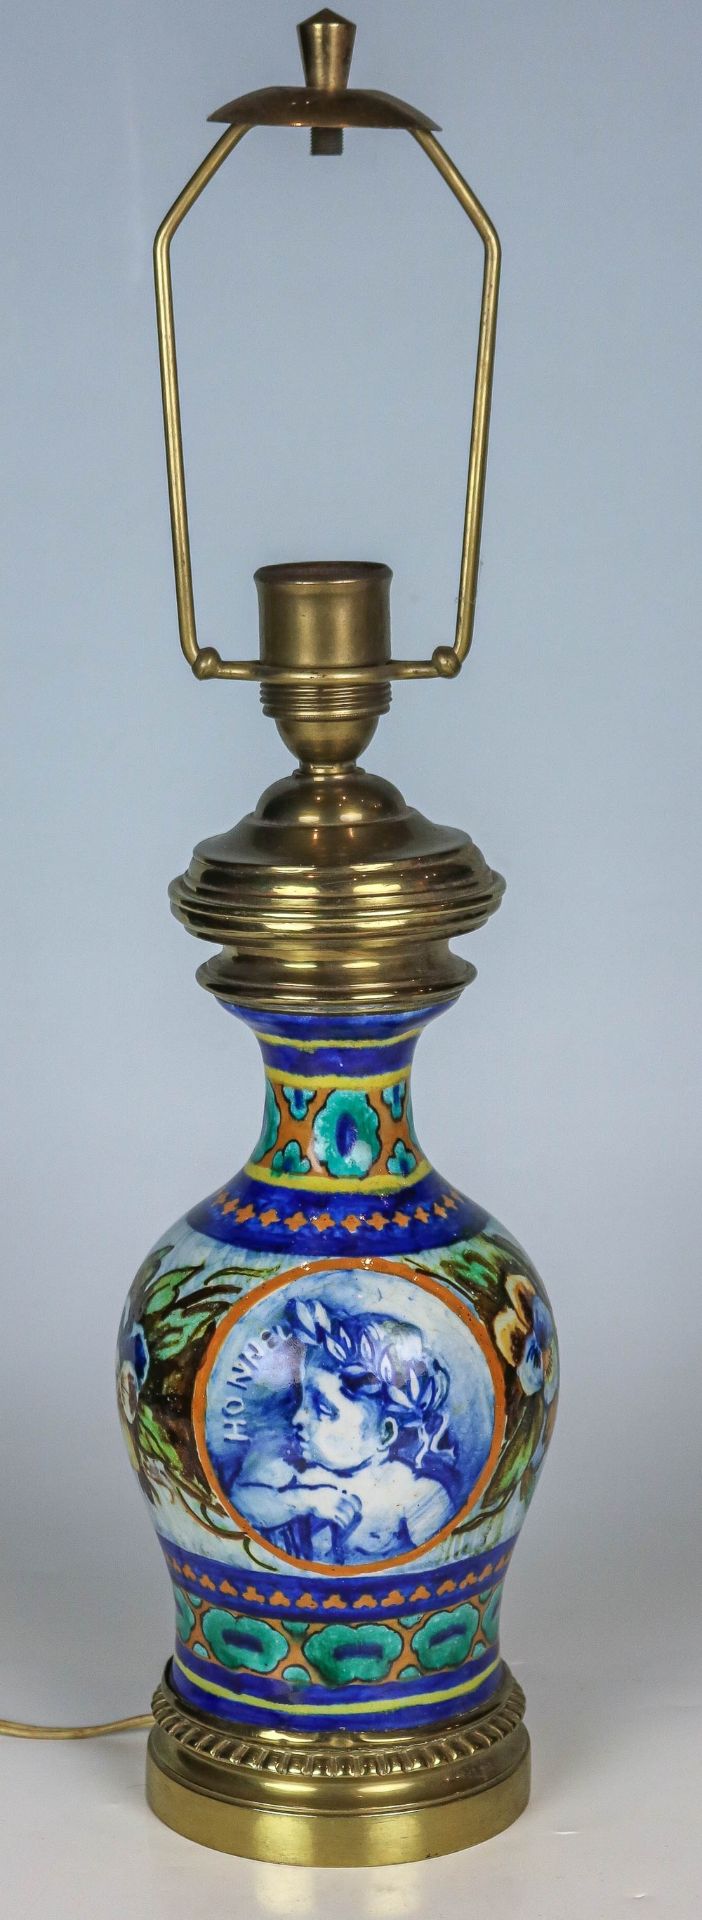 Vasenlampe Frankreich, um 1900